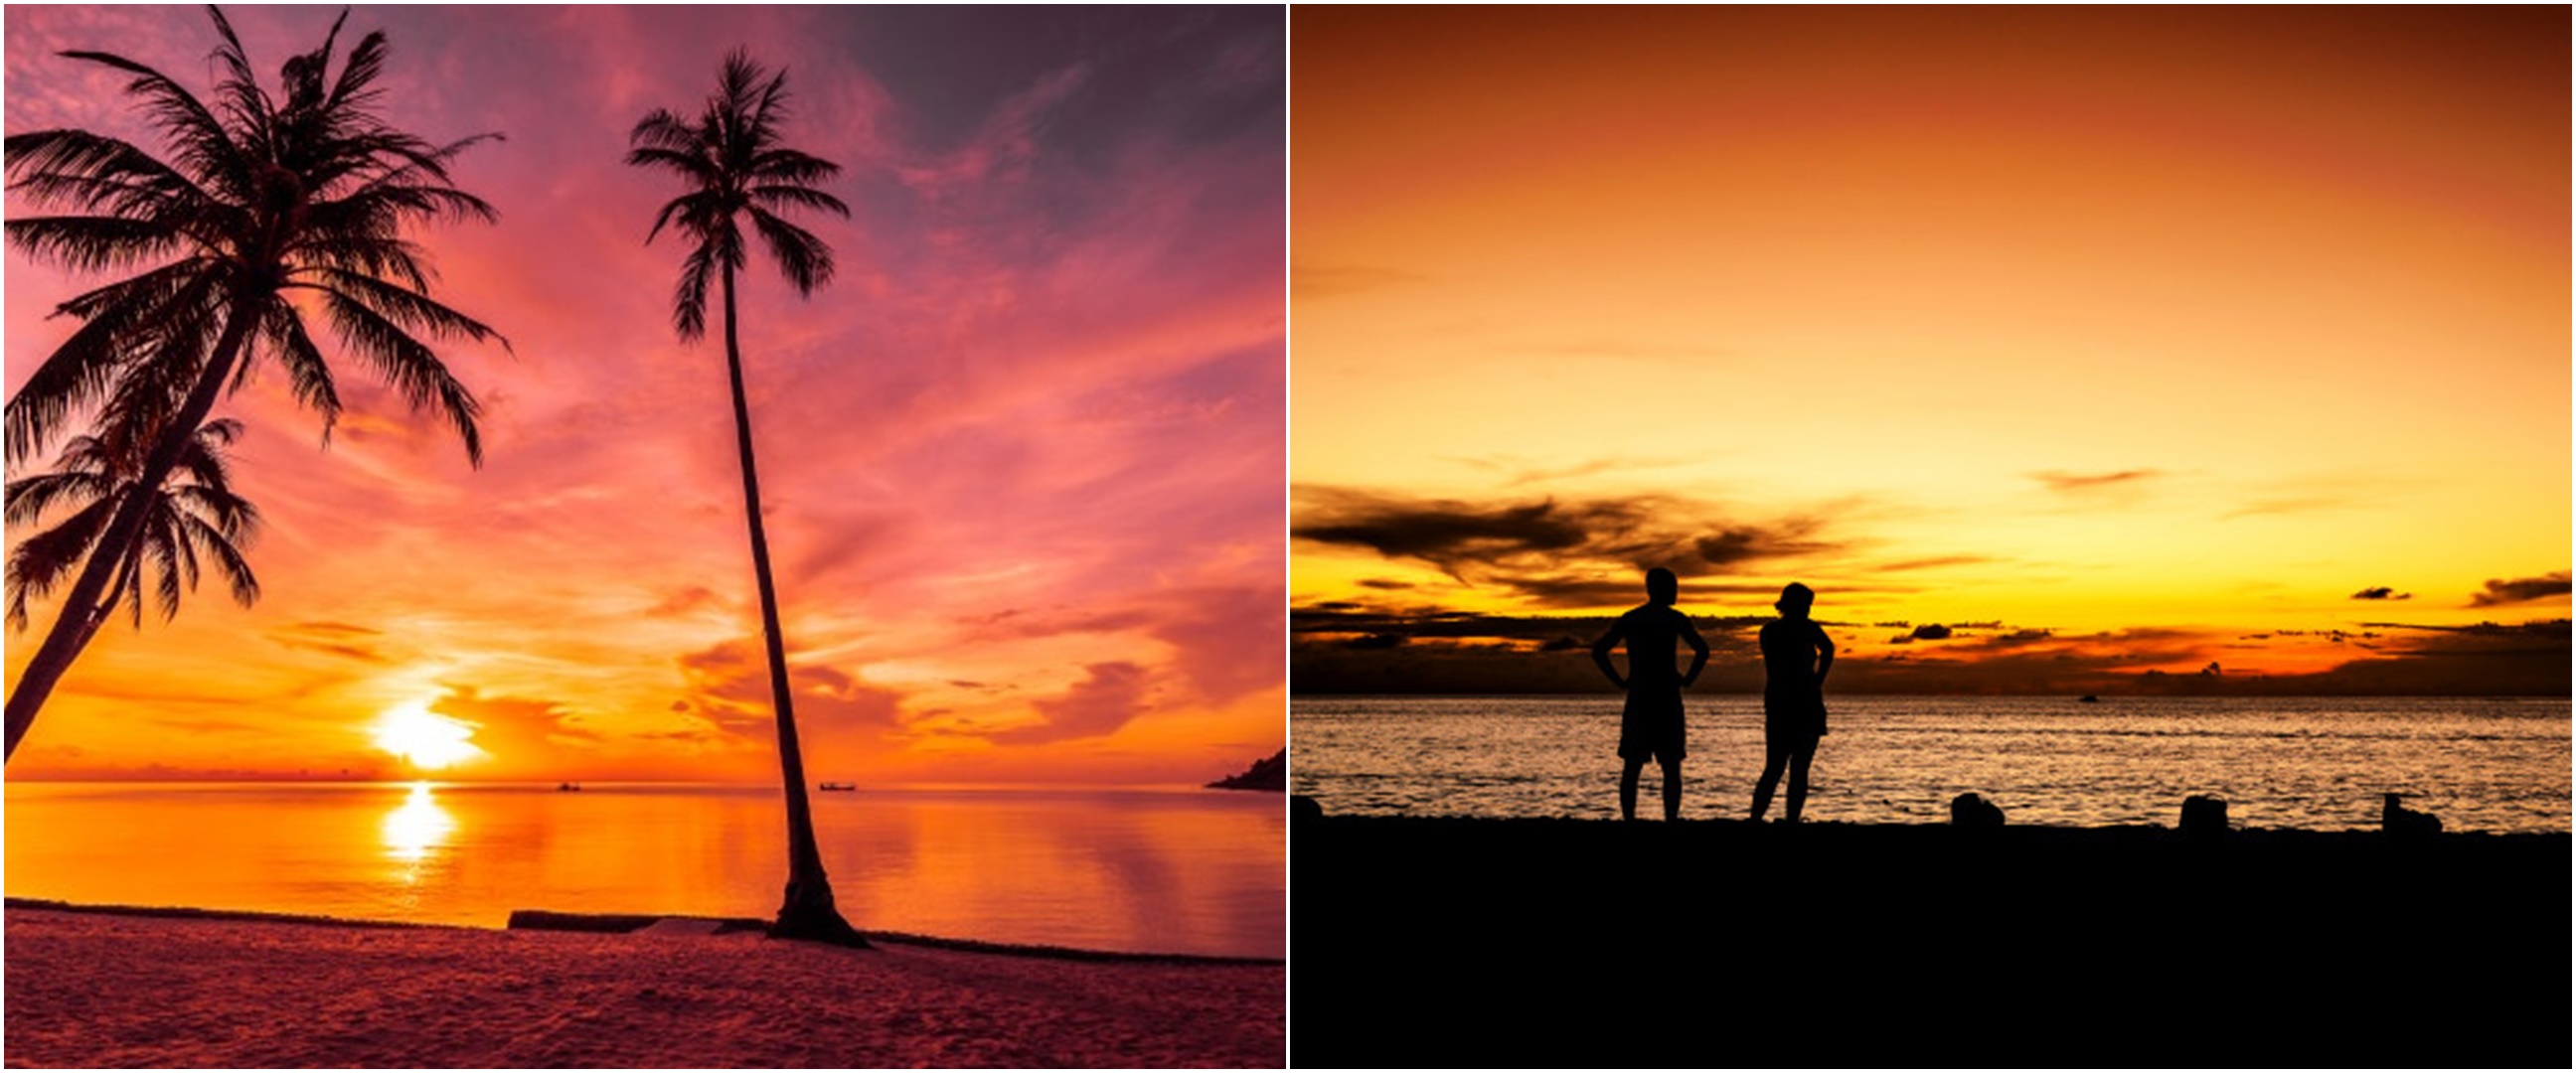 40 Caption keindahan sunset, penuh makna dan cocok untuk media sosial